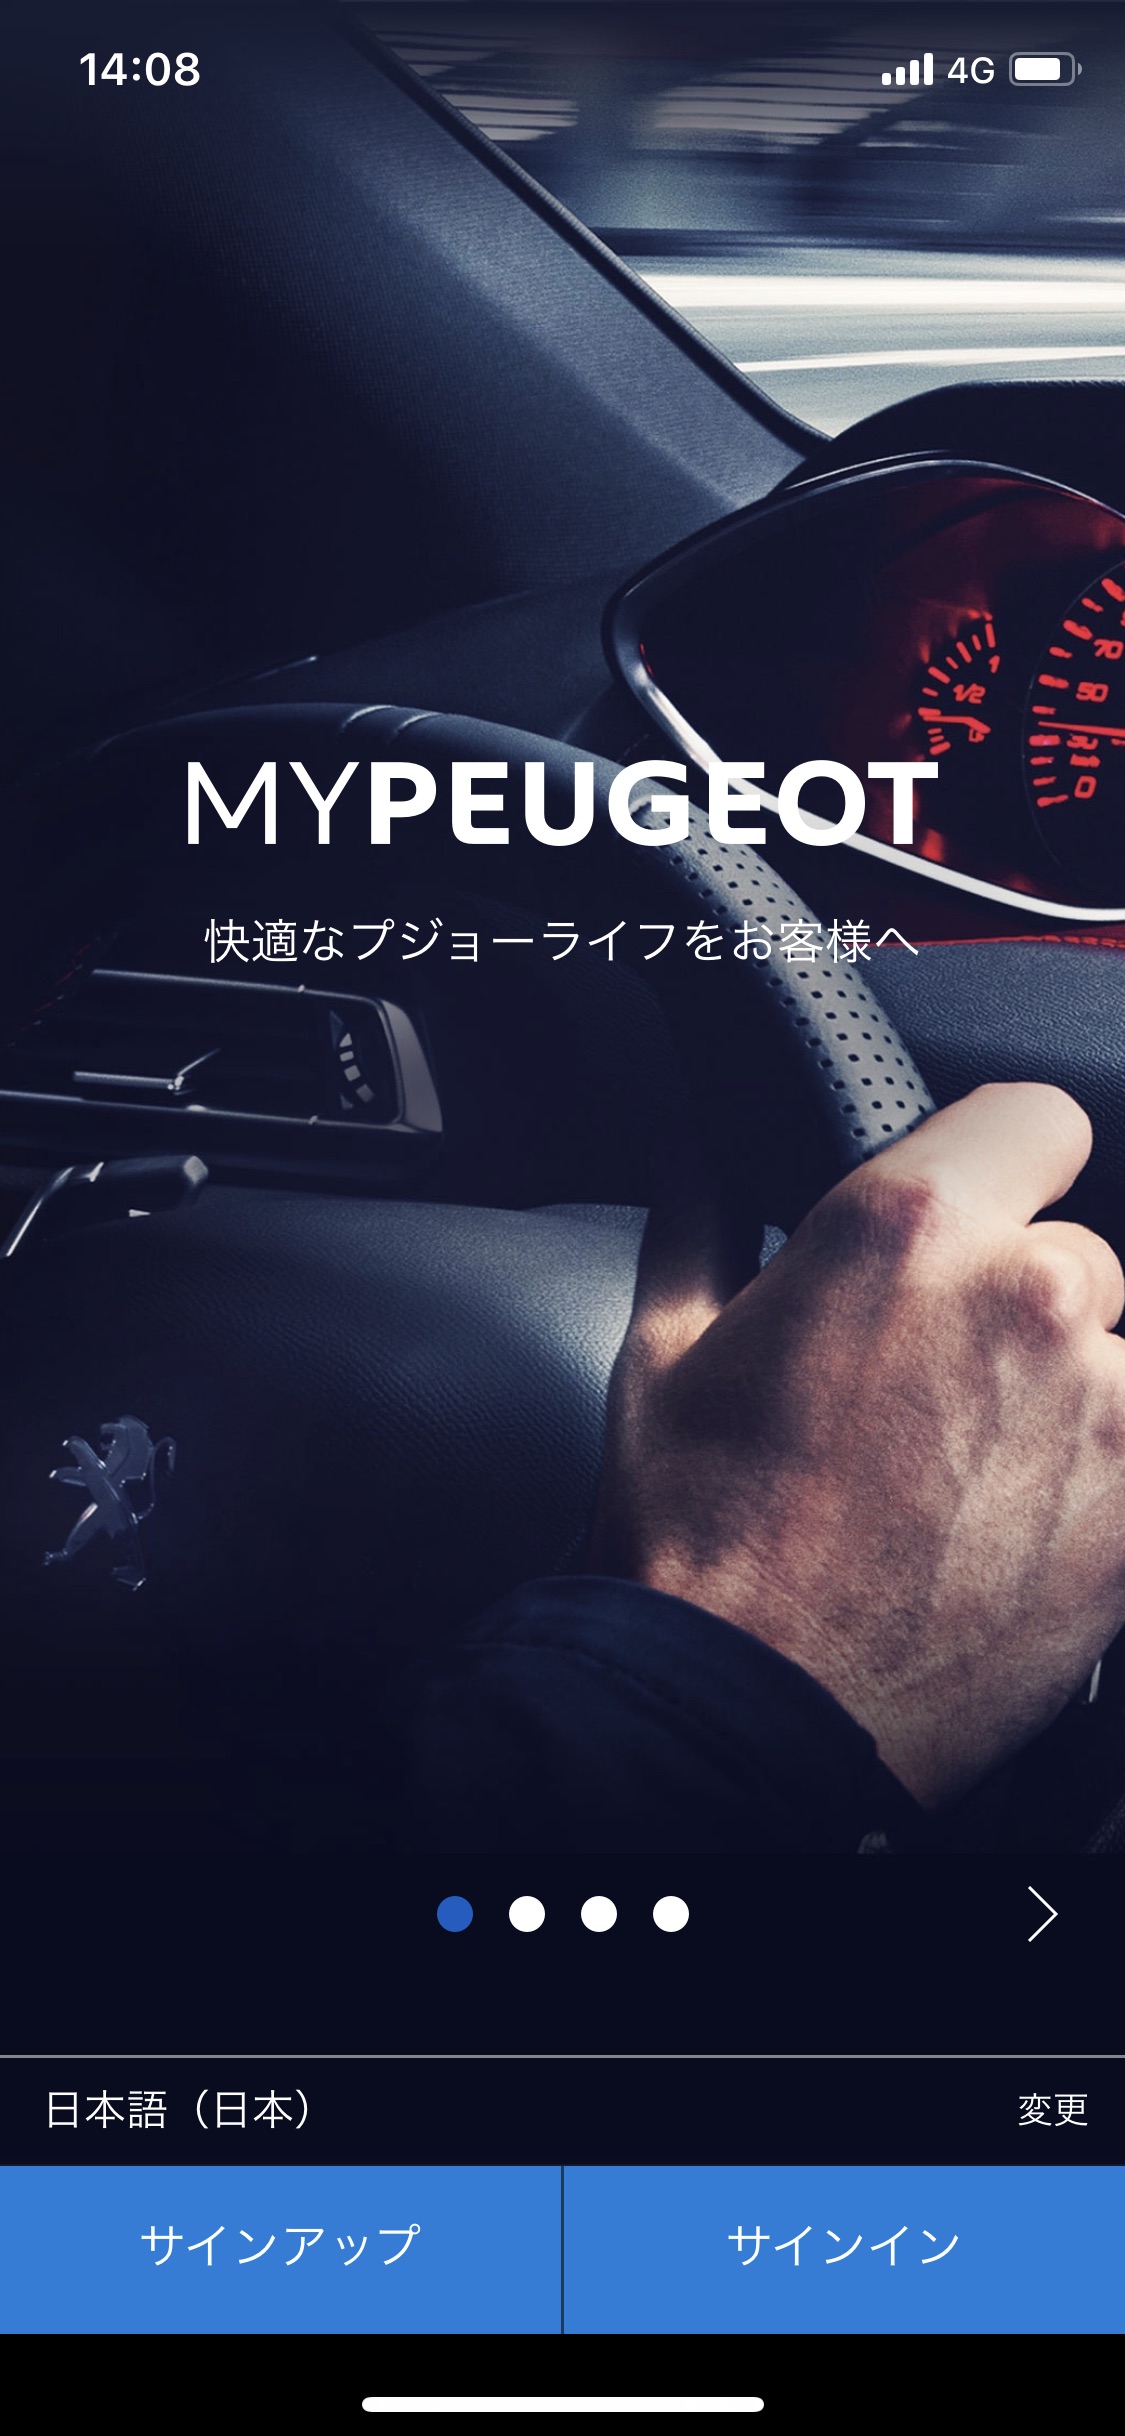 「My Peugeot」について